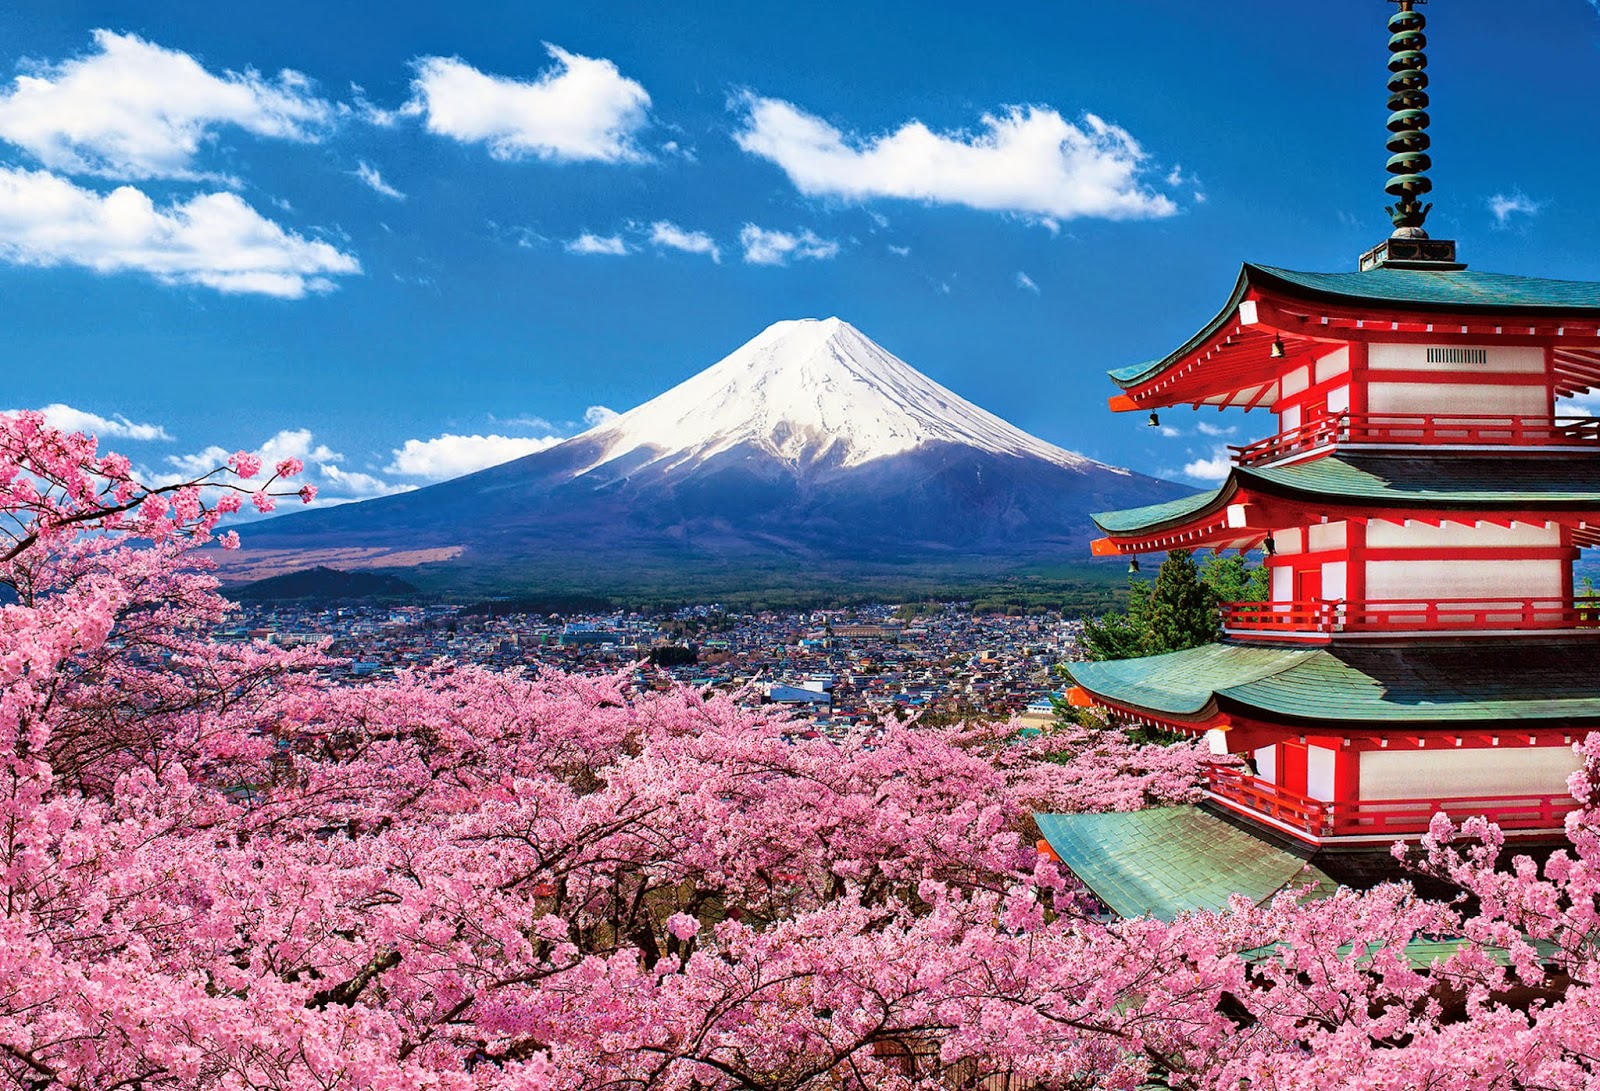 Du lịch Nhật Bản - Hành trình khám phá xứ sở hoa anh đào tuyệt đẹp